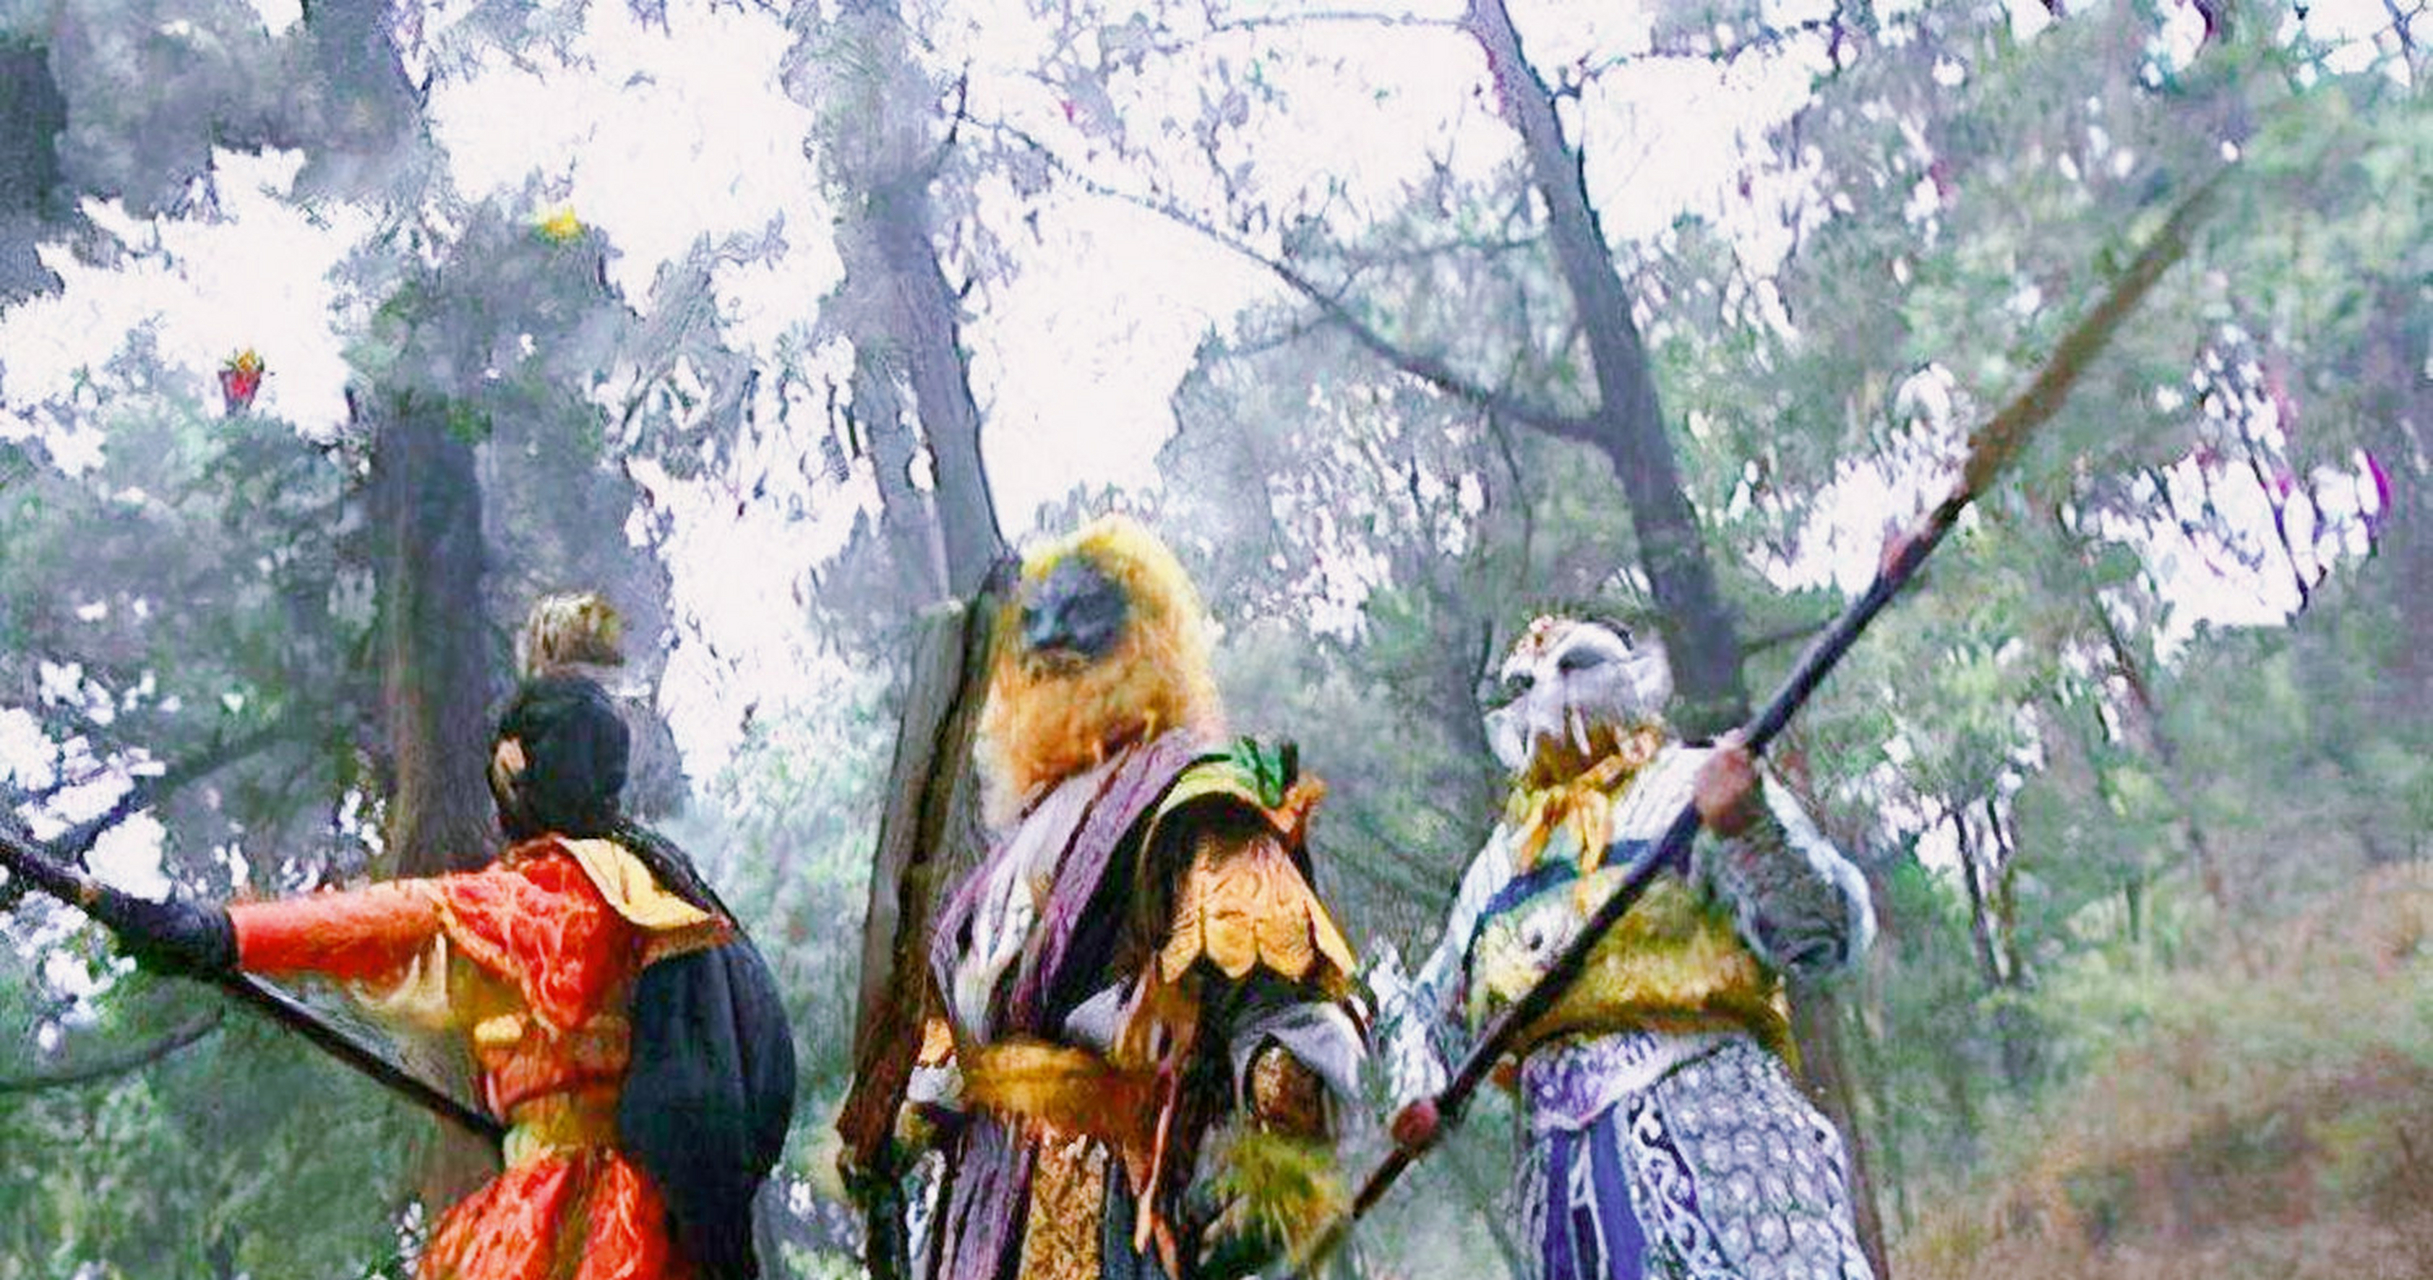 《西游记》的狮驼岭有三个大魔王,老大青狮精是文殊菩萨的坐骑,老二